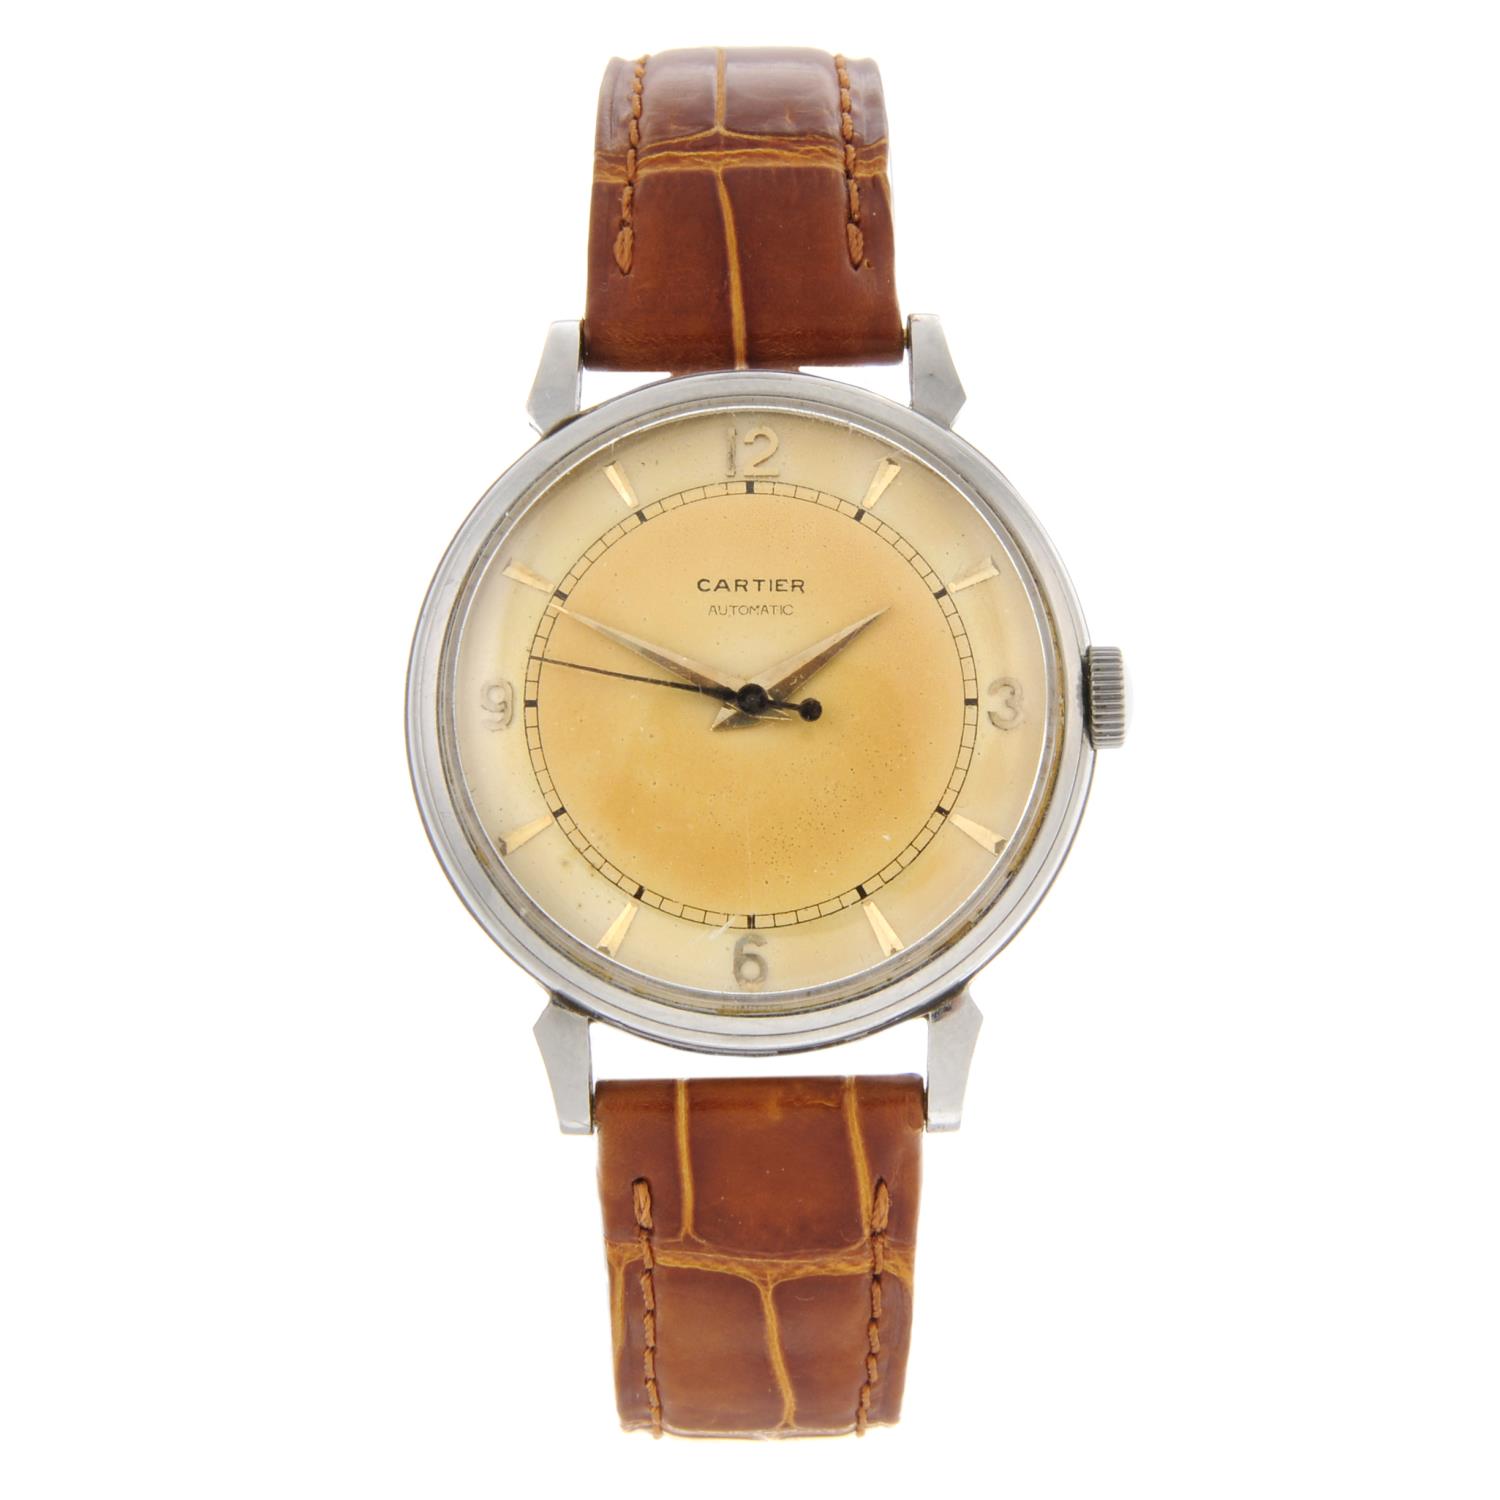 CARTIER - a gentleman's wrist watch.